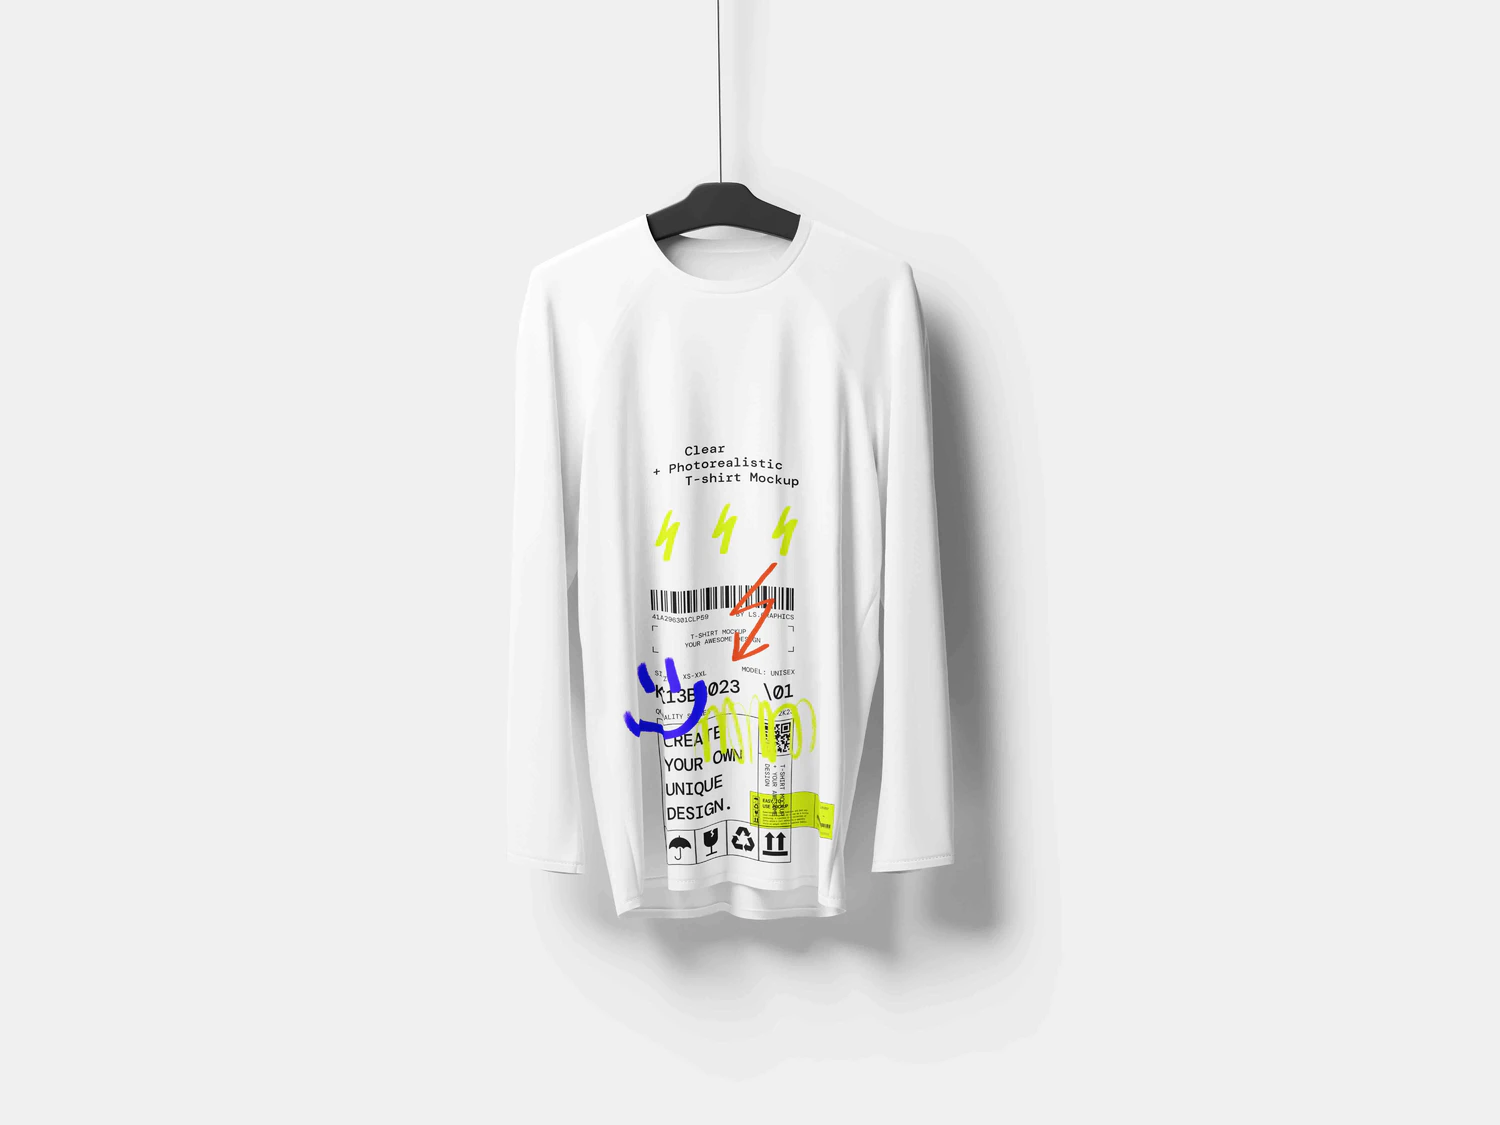 5035 32款3D立体短袖T恤polo衫背心服装设计贴图ps样机素材展示效果图 T-Shirt Mockups@GOOODME.COM